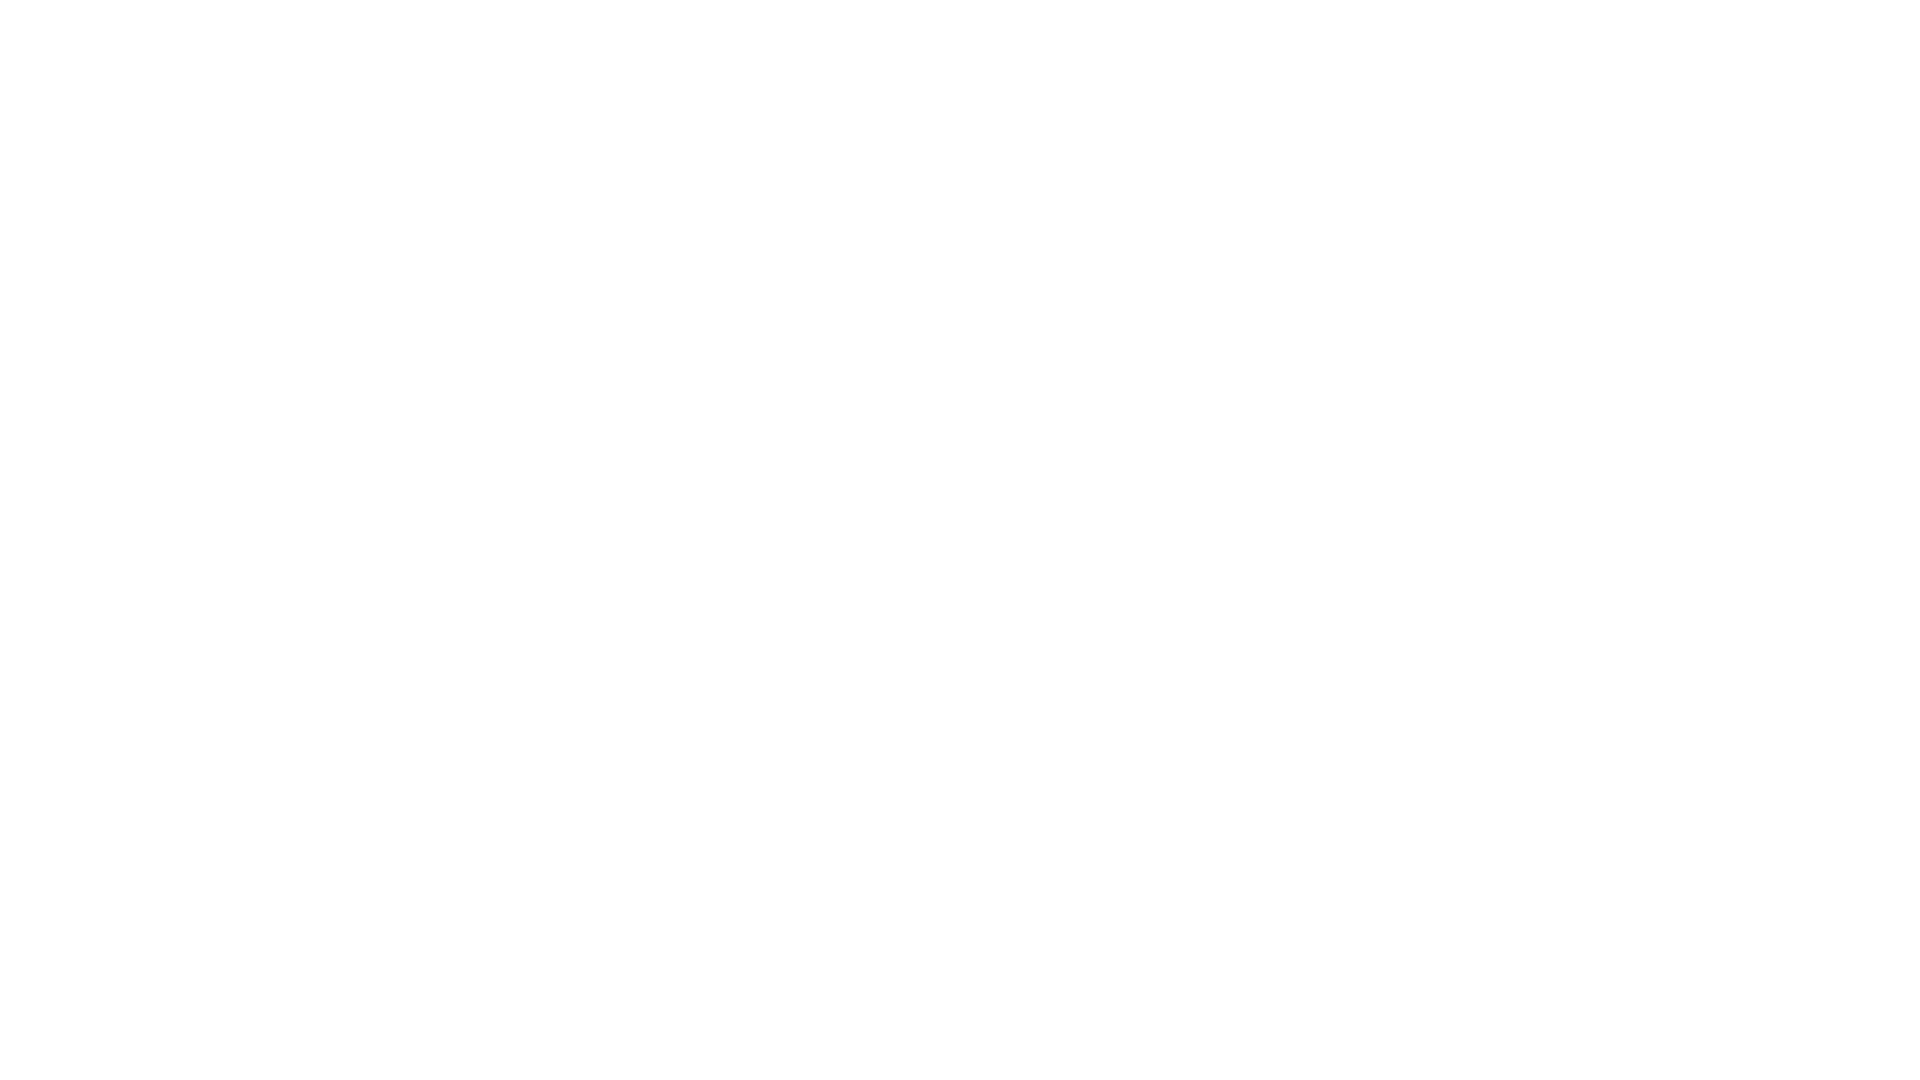 Logo Image of Digital Bytes Production & Design, Utah-based video production facility